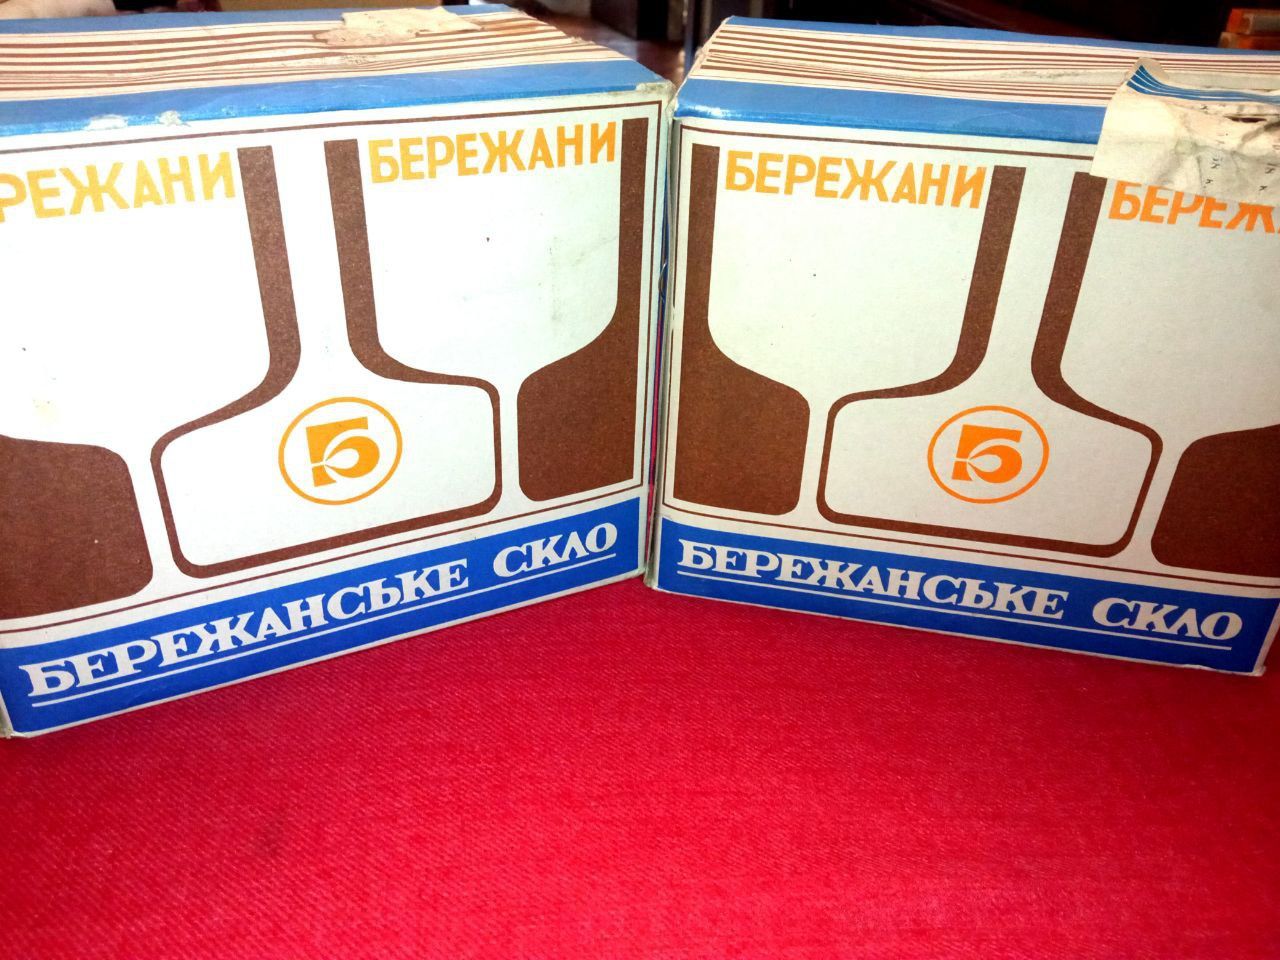 Продам новые в упаковках высокие стаканы времени СССР